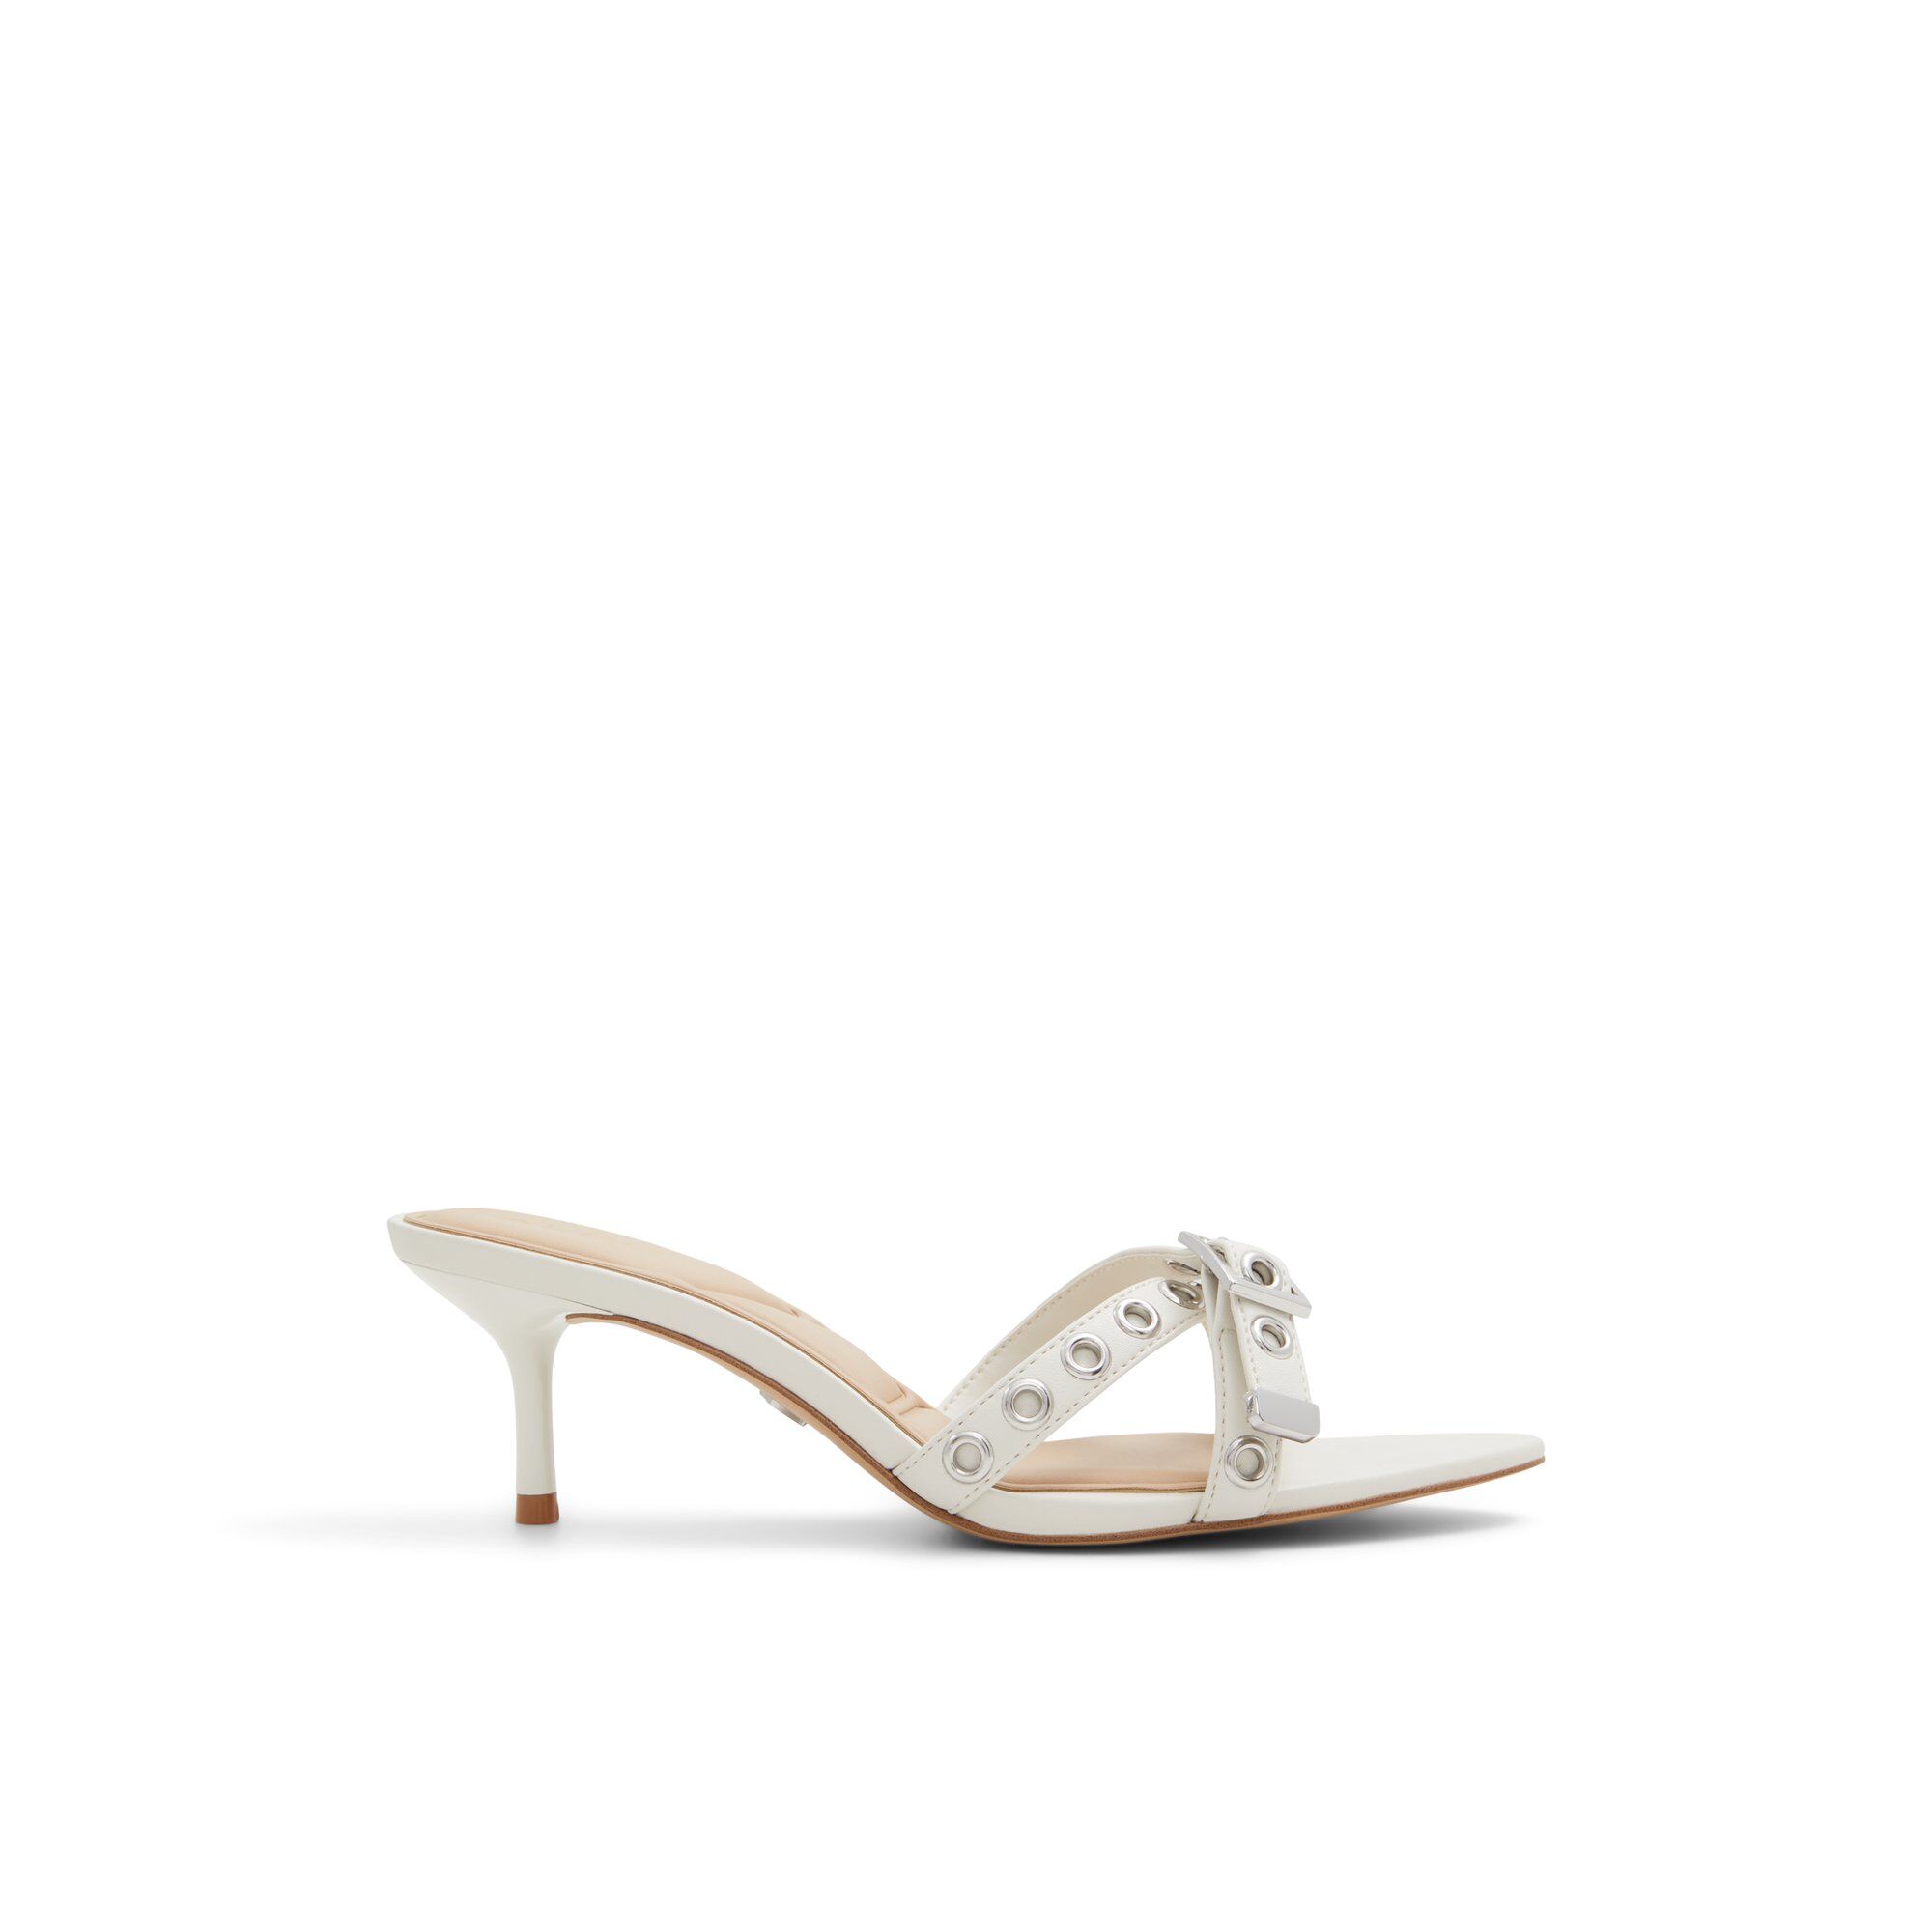 ALDO Marylene - Women's Heeled Mules Sandals - White, Size 11